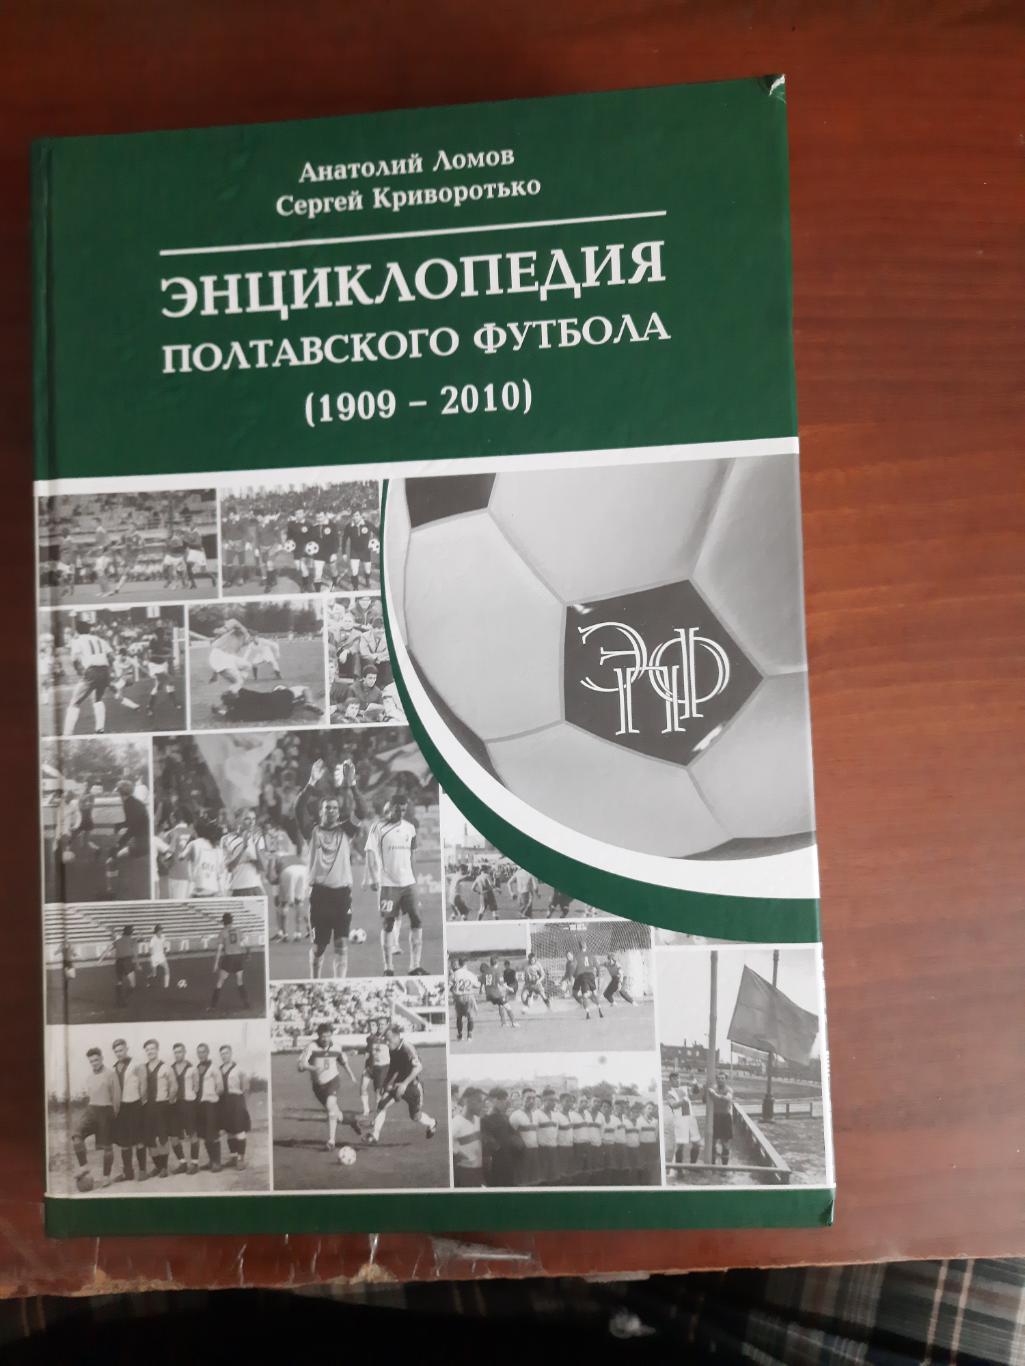 Энциклопедия Полтавского футбола (2010 год, 564 страницы)